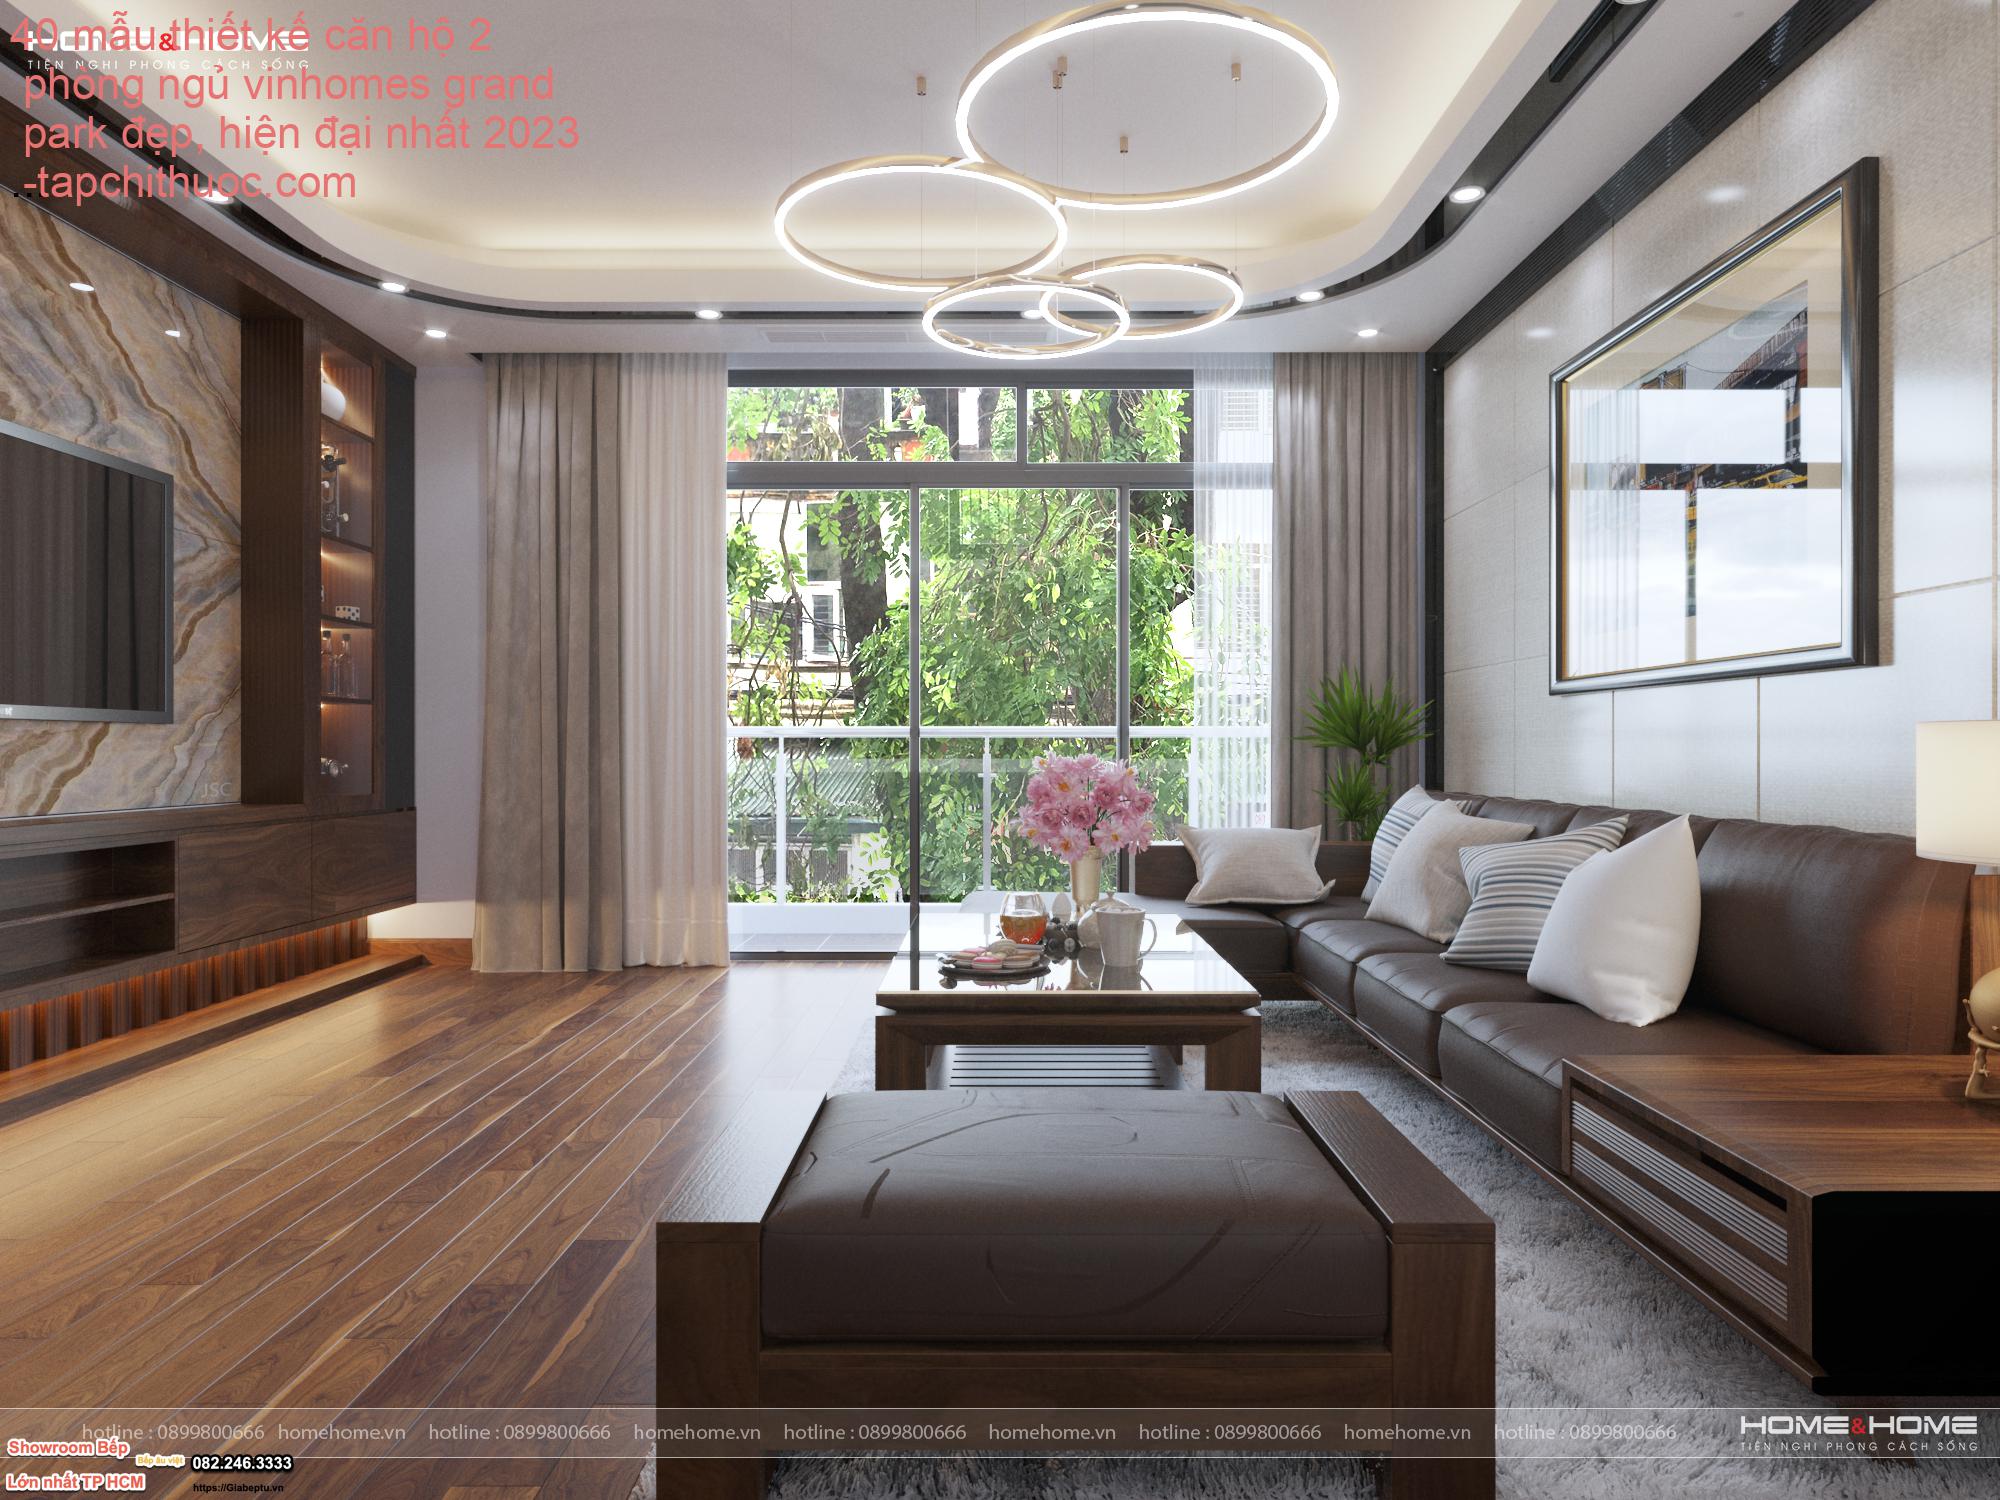 40 mẫu thiết kế căn hộ 2 phòng ngủ vinhomes grand park đẹp, hiện đại nhất 2023